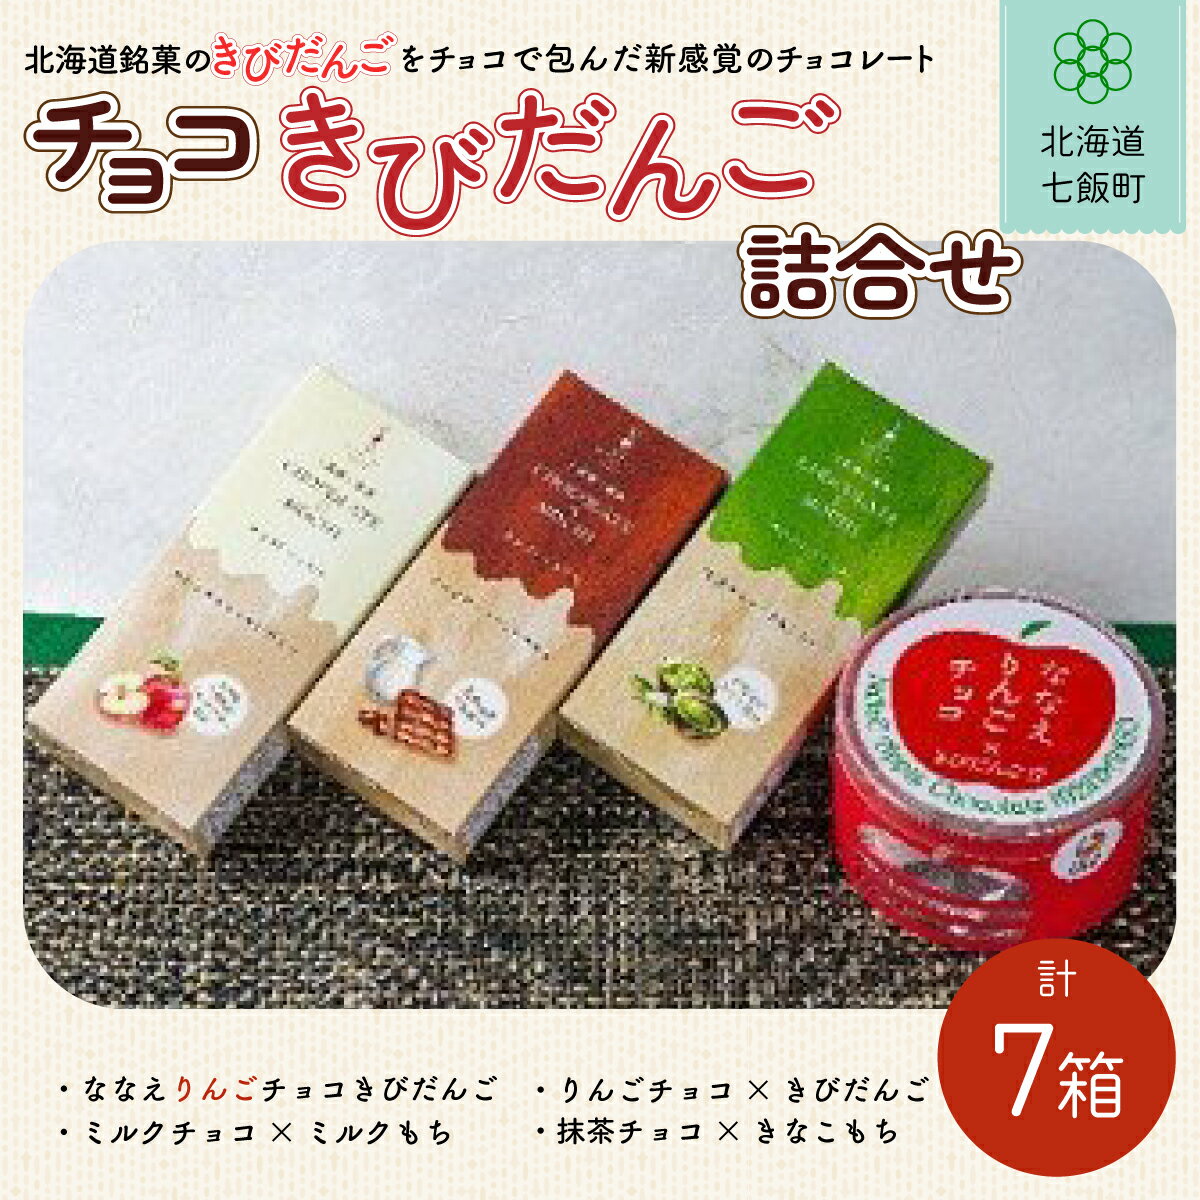 【ふるさと納税】チョコきびだんご詰め合わせ (4種7箱) NAY005